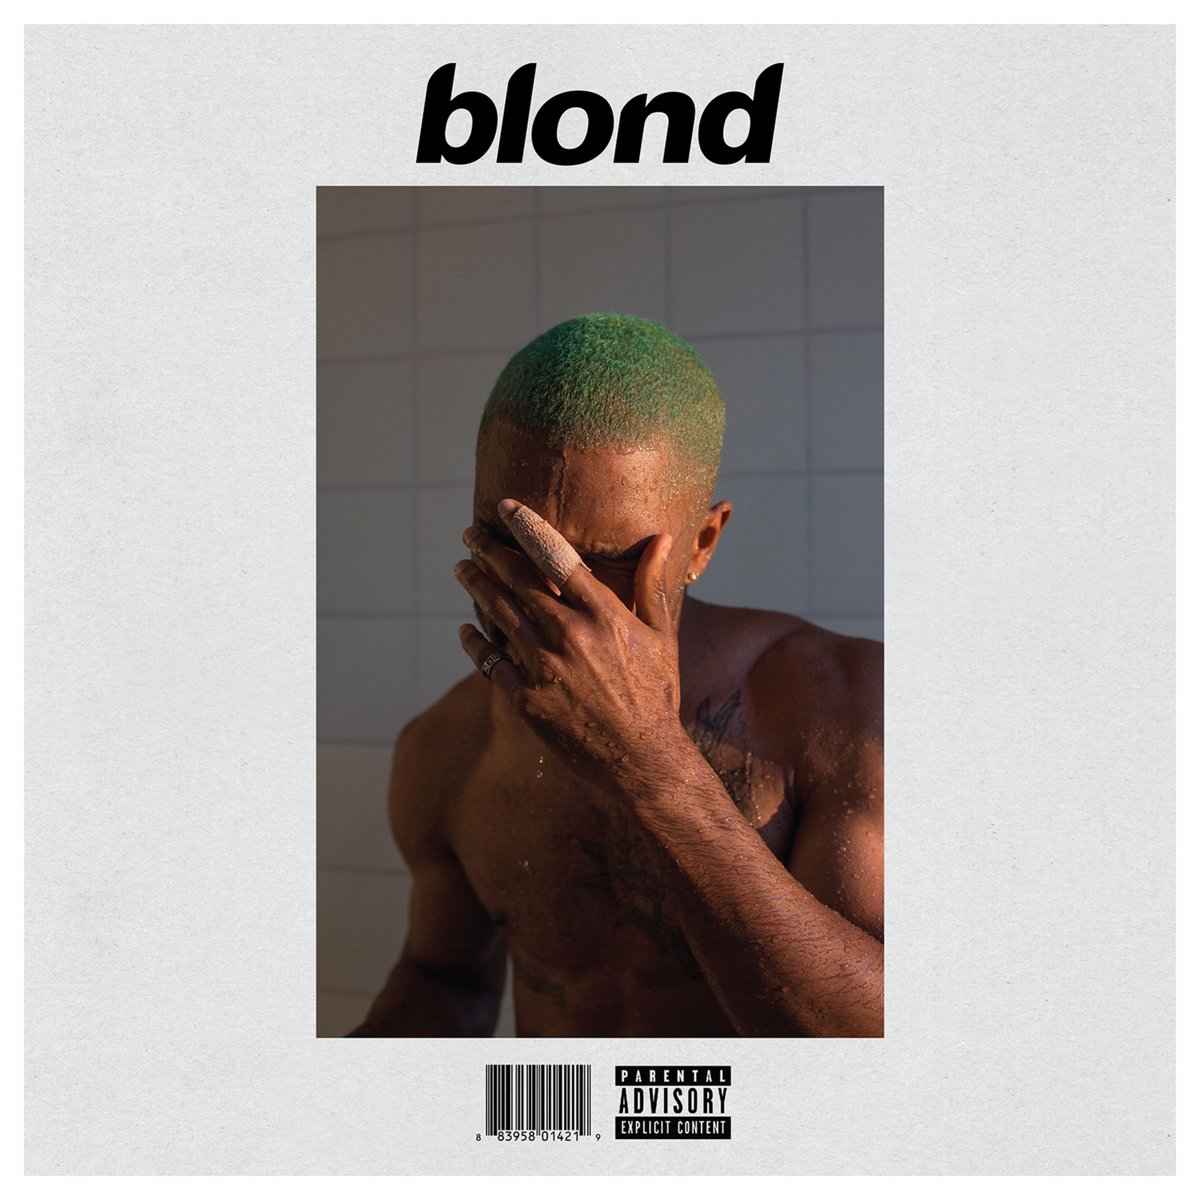 Frank Ocean – Blonde